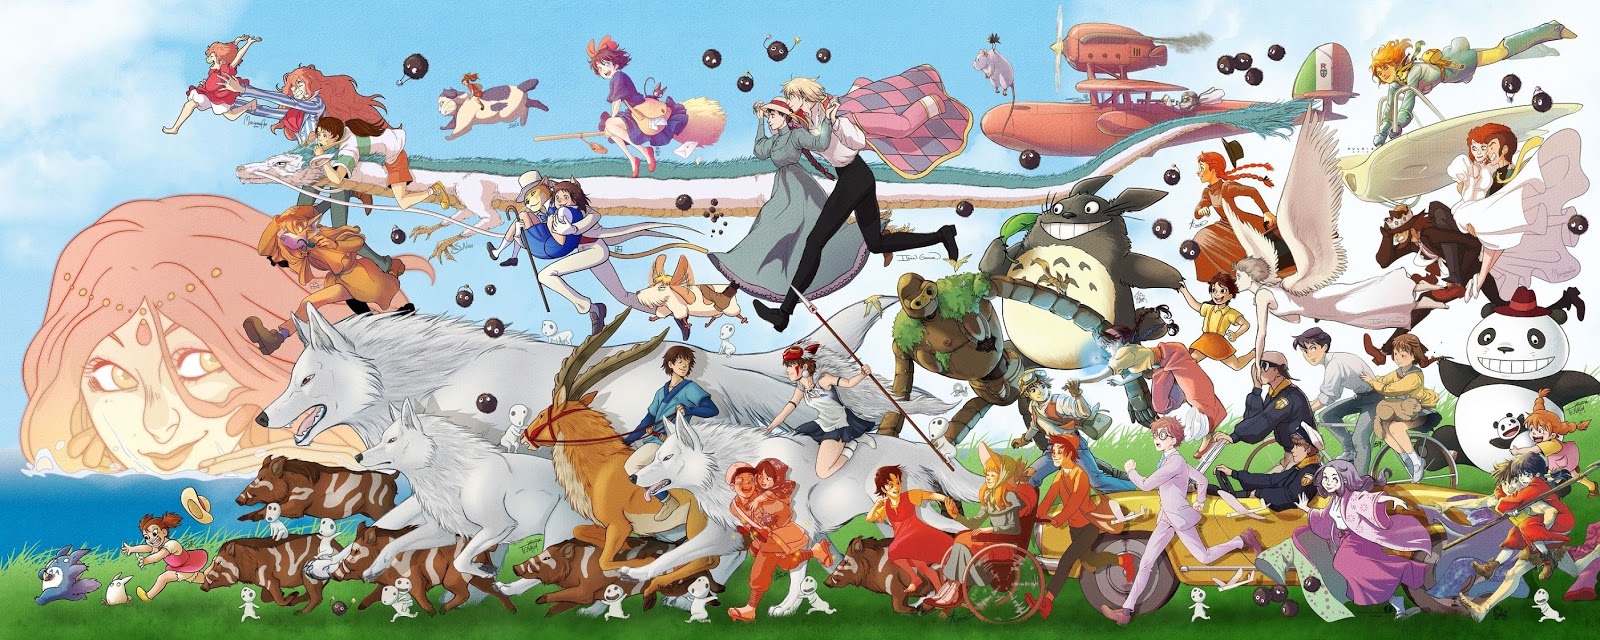 空中庭園と幻の飛行船 ジブリキャラ 宮崎 高畑アニメのメインキャラが勢揃い 圧巻の ジブリパレード 画像